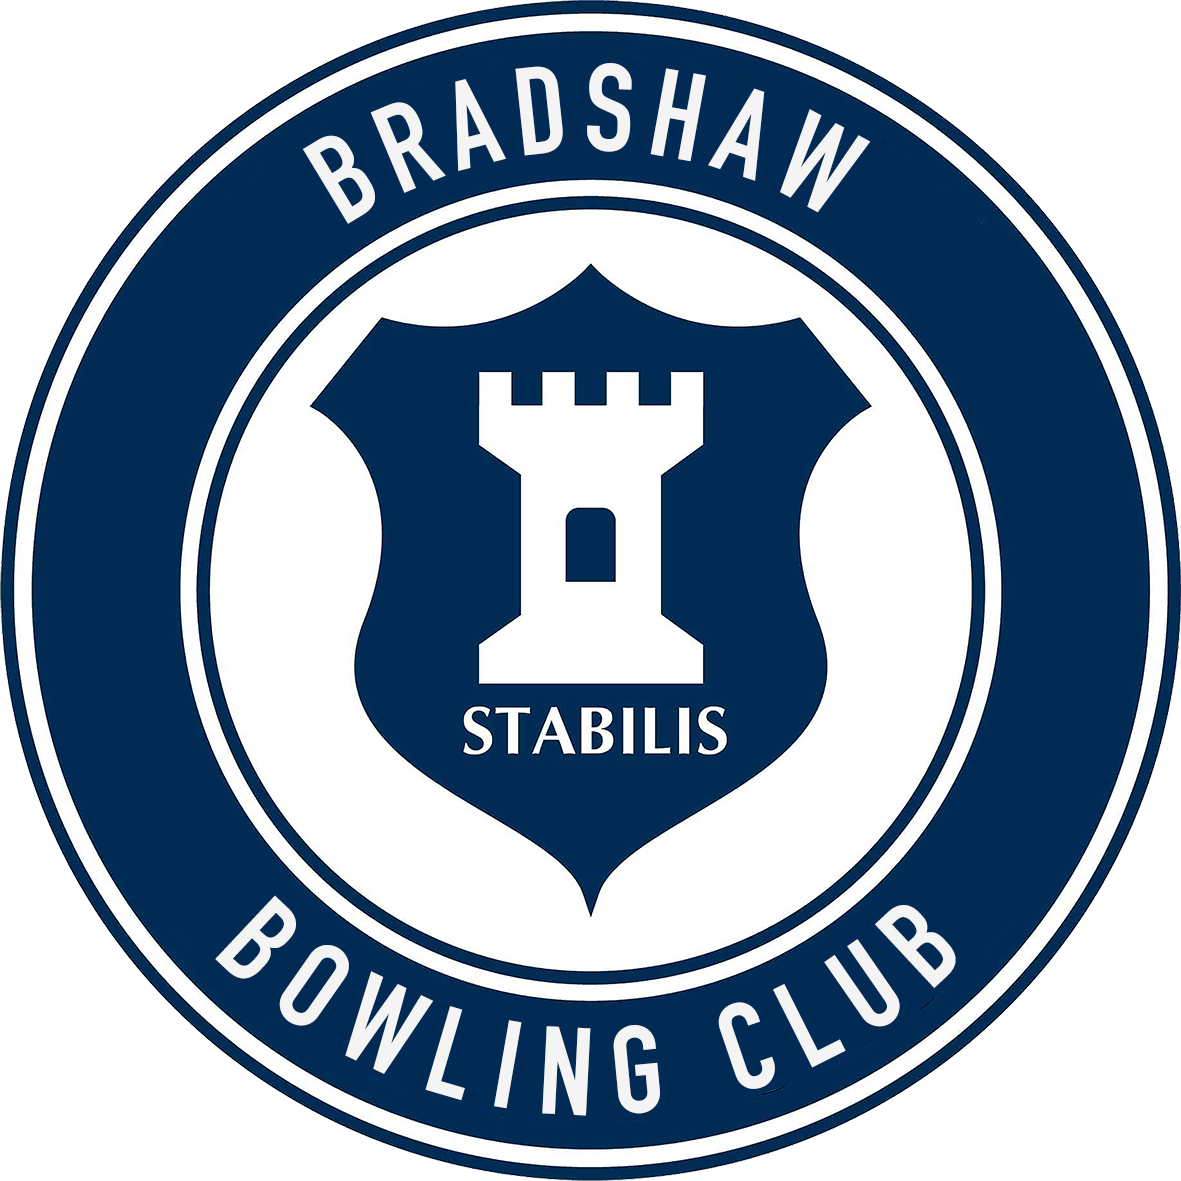 Bradshaw Bowling Club - Bolton